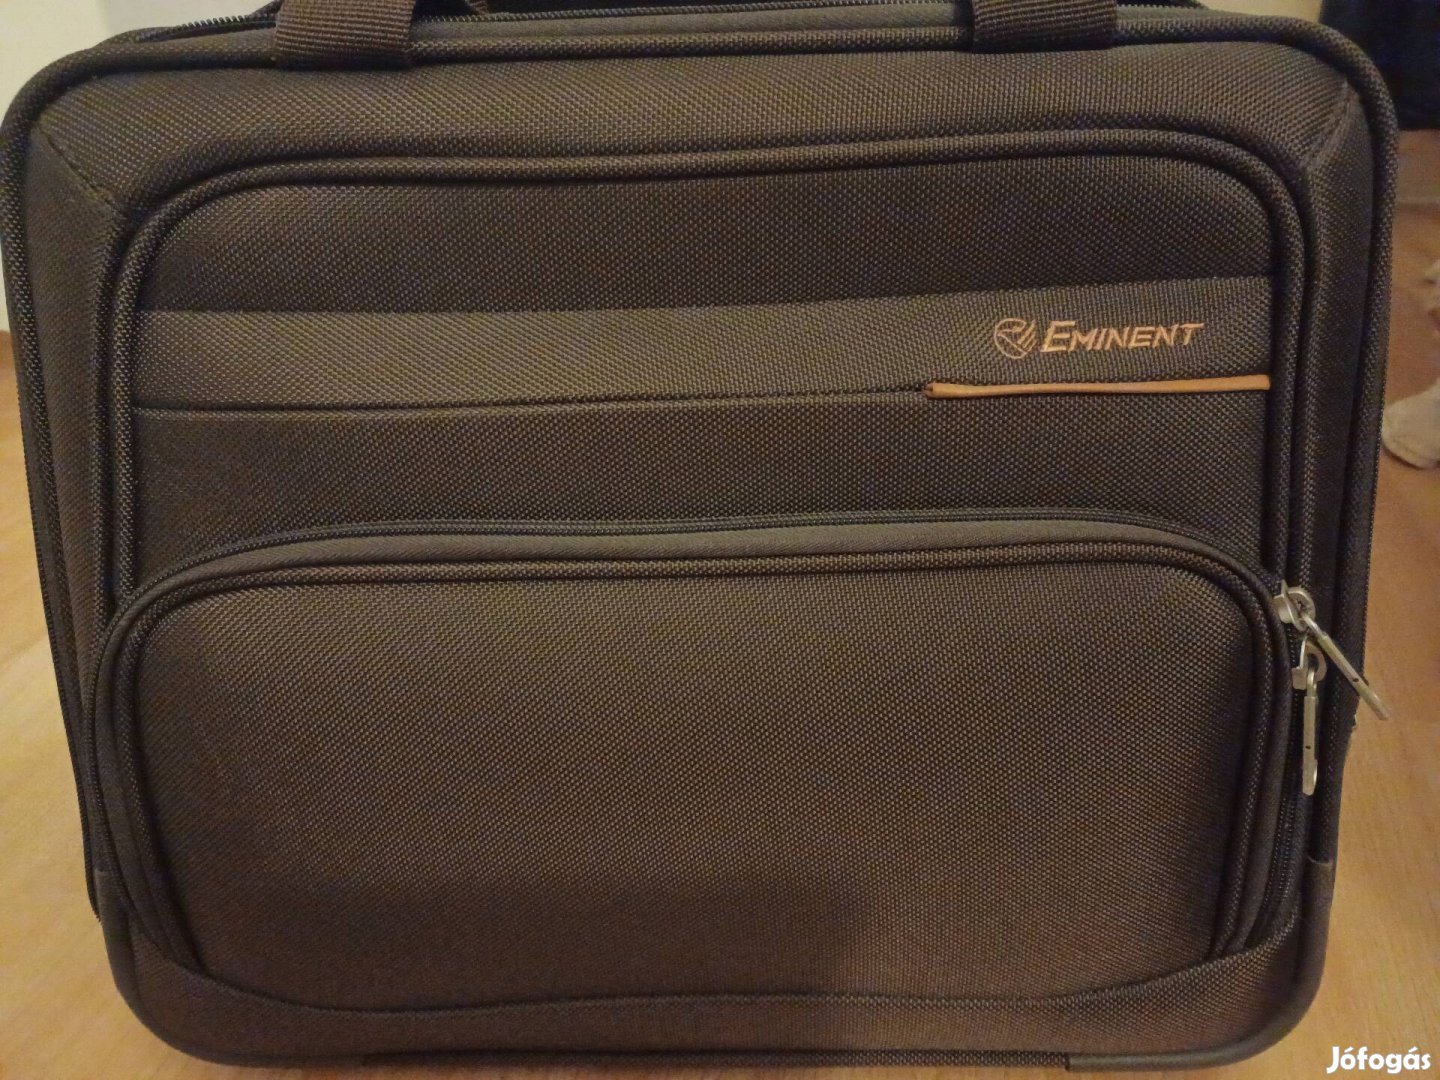 Eminent gurulós laptop táska